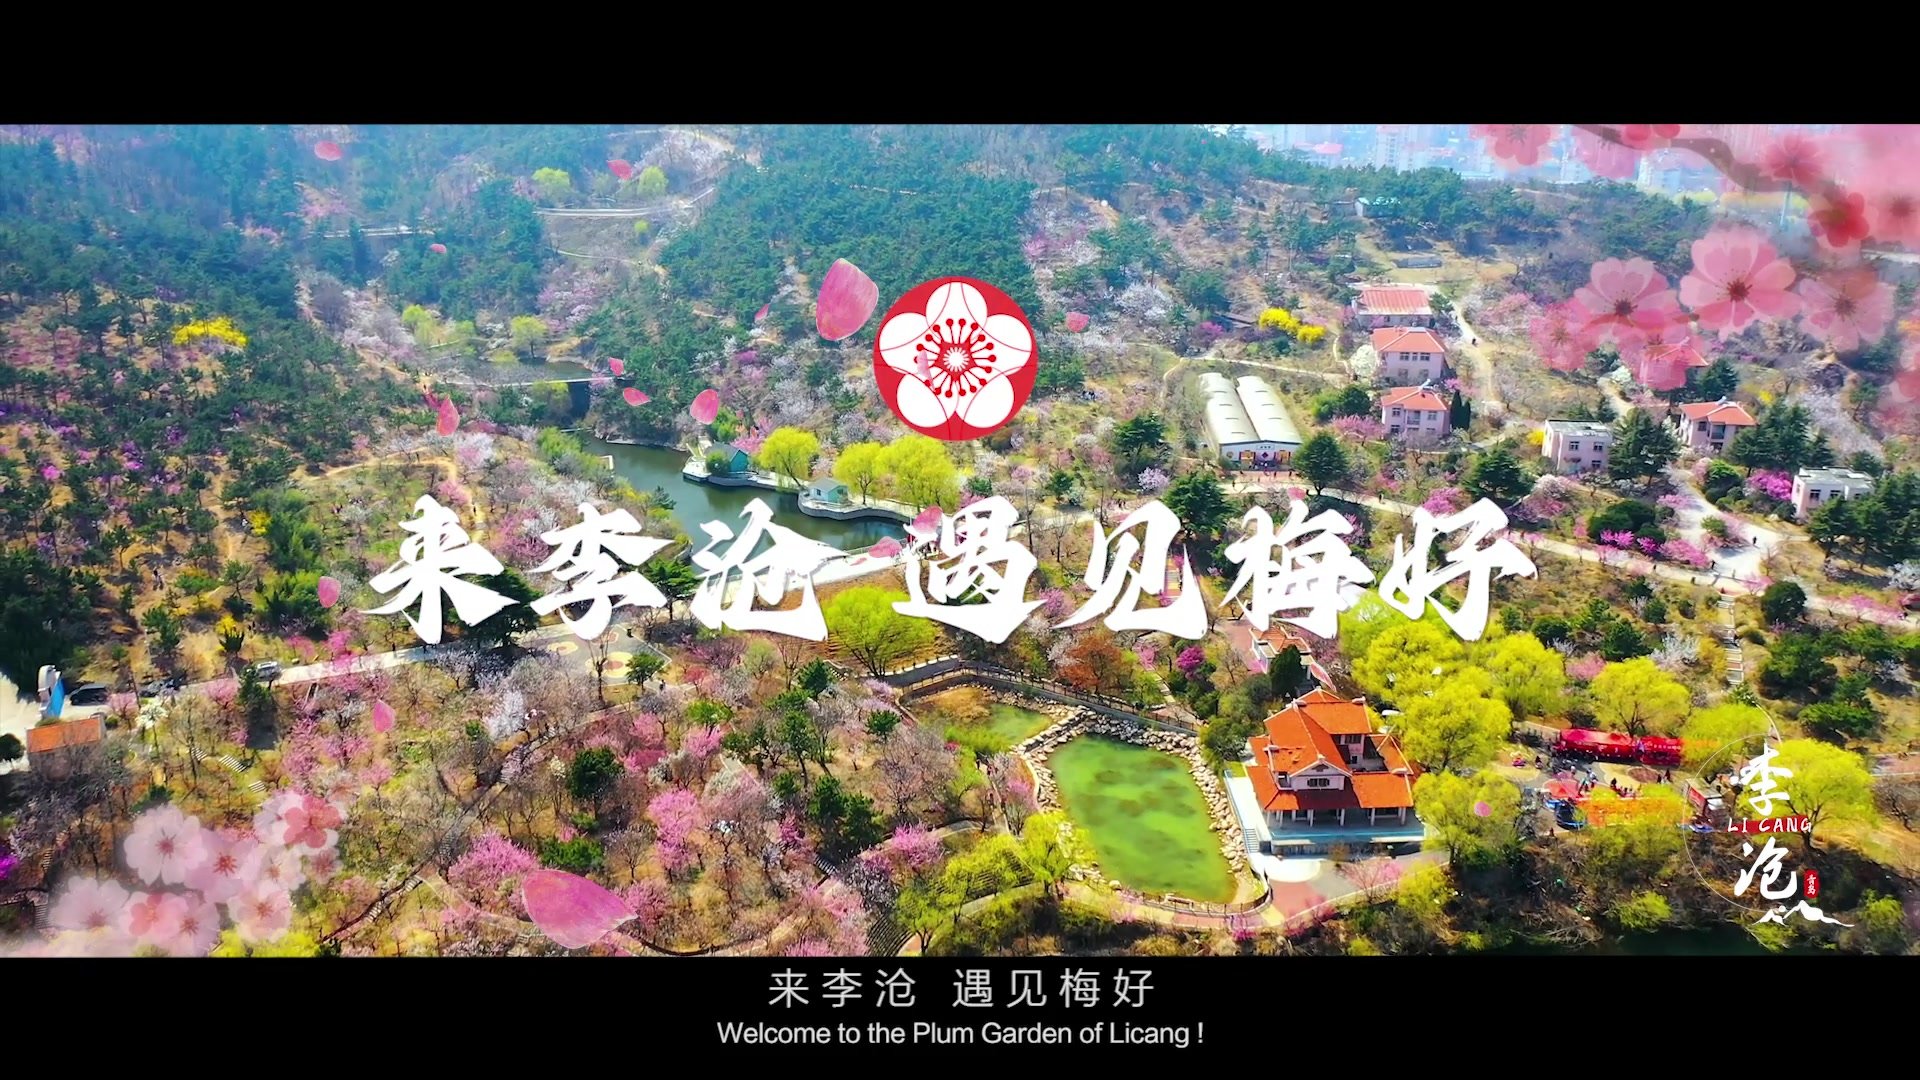 来李沧 遇见“梅”好 第二十三届中国·青岛梅花节宣传片